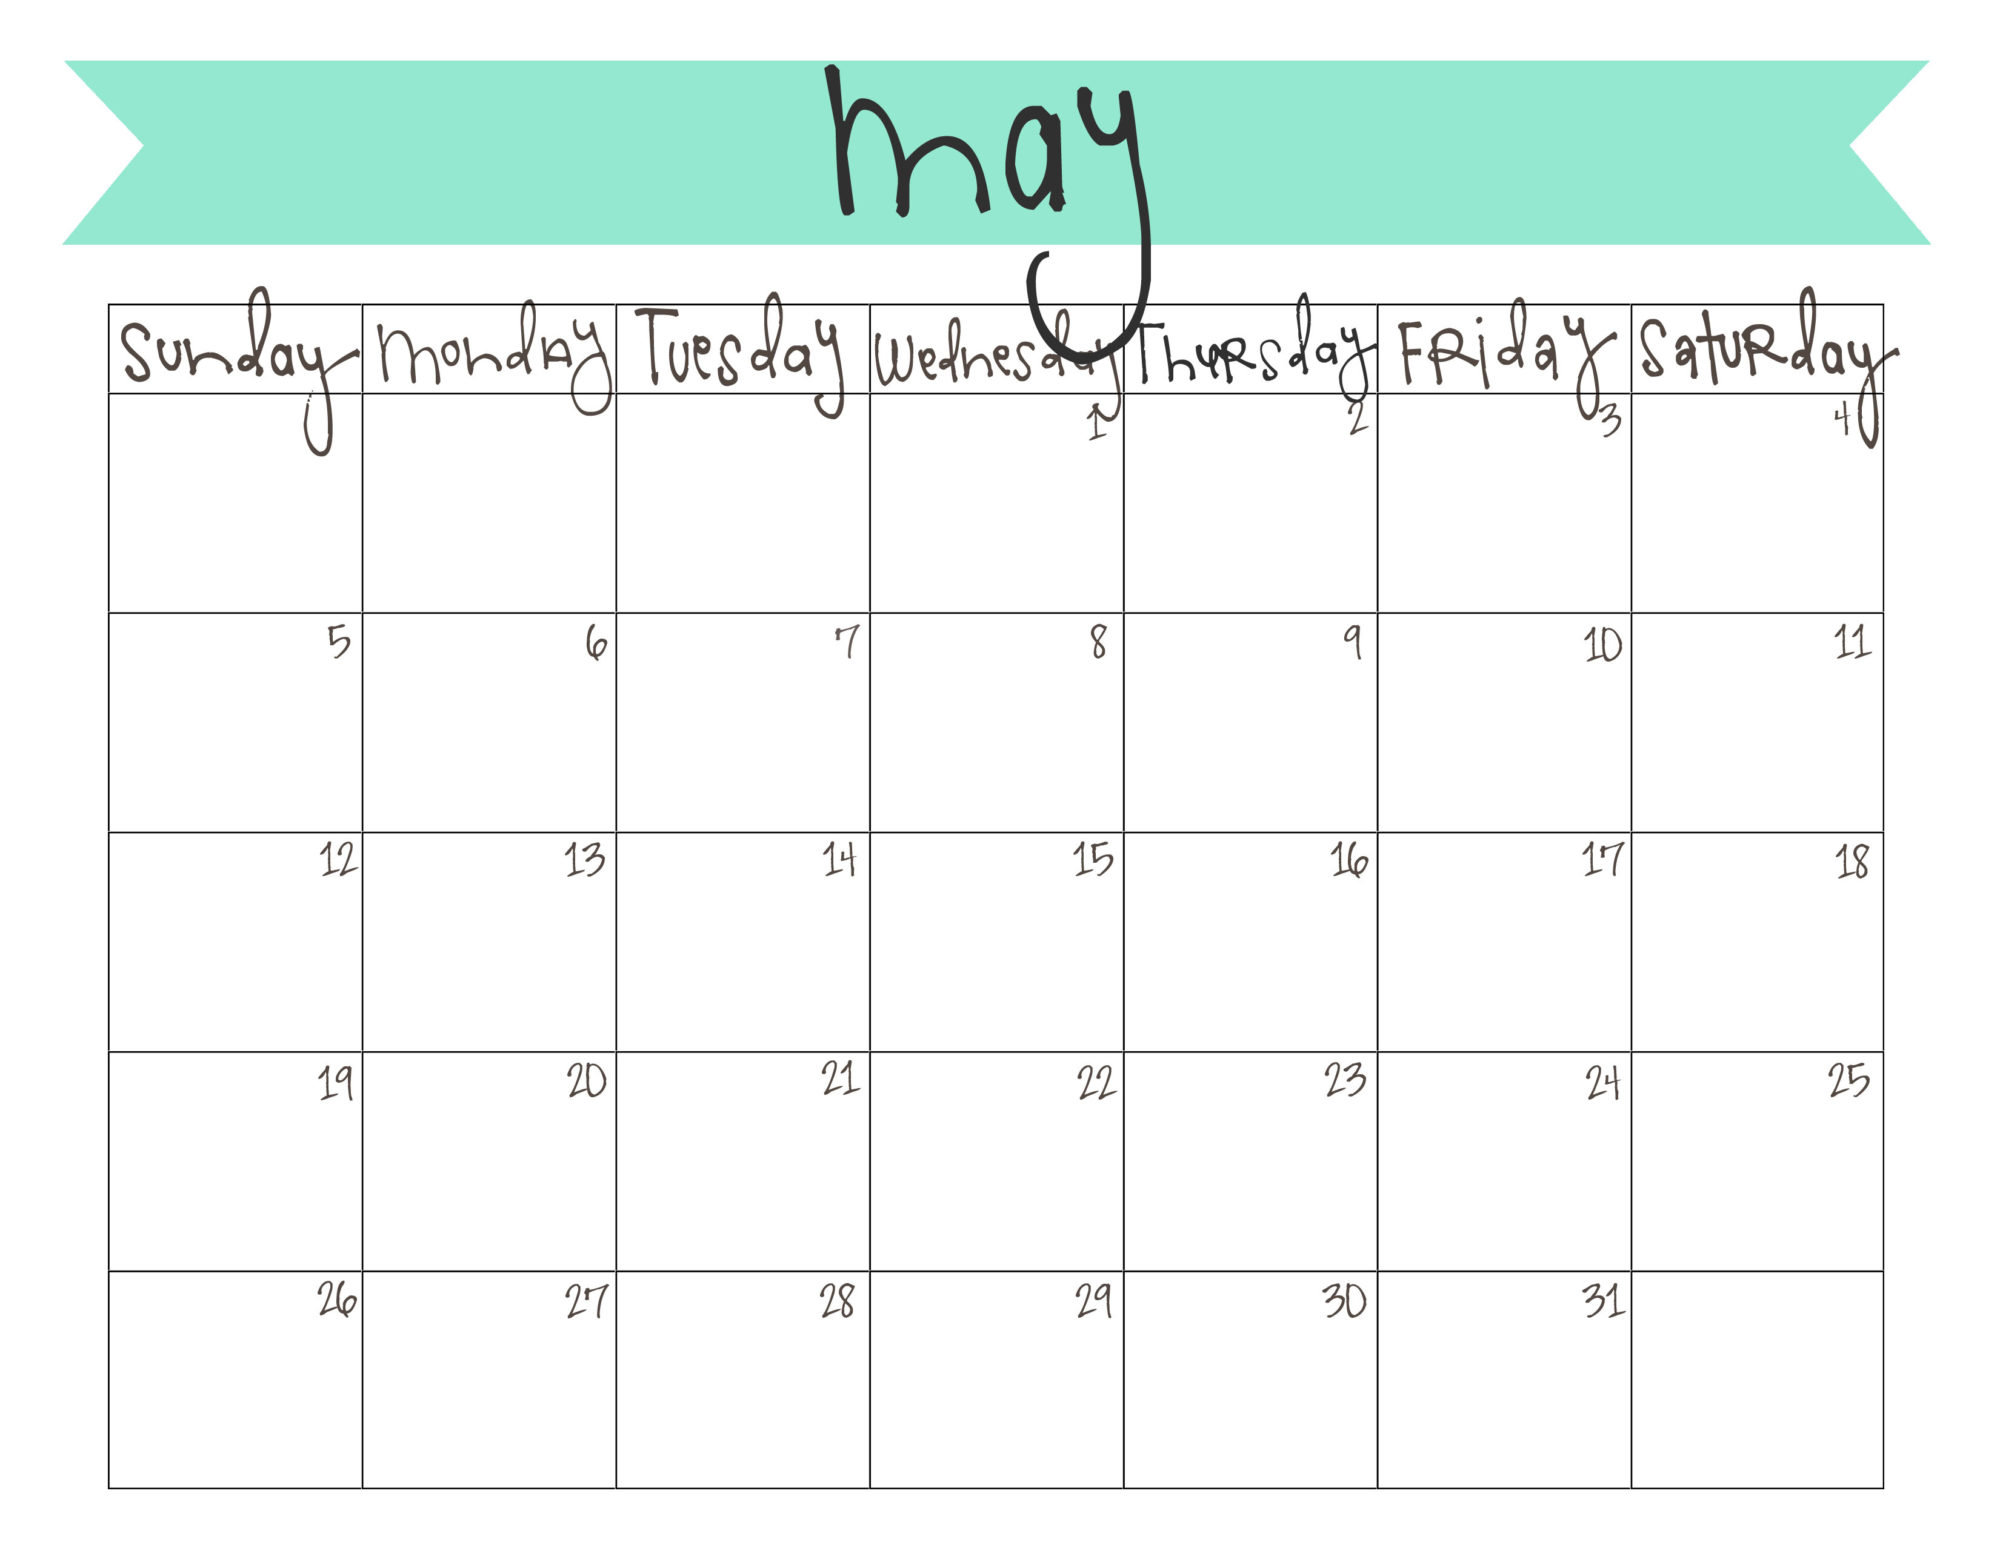 may-calendar-free-printable-printable-world-holiday